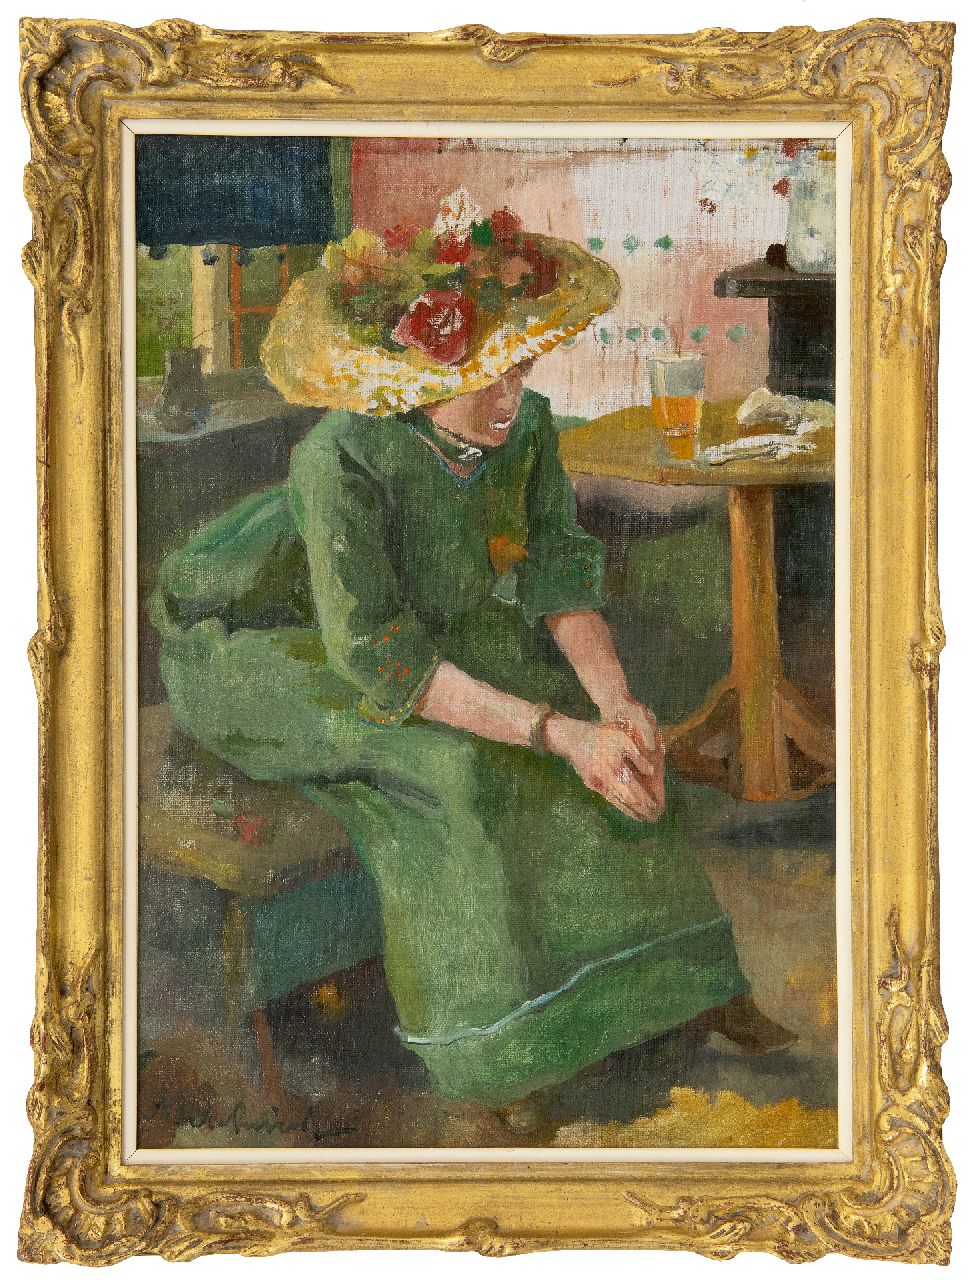 Rivière A.P. de la | Adrianus Philippus 'Adriaan' de la Rivière | Paintings offered for sale | Woman in green dress, oil on canvas 40.3 x 28.3 cm, signed l.l.